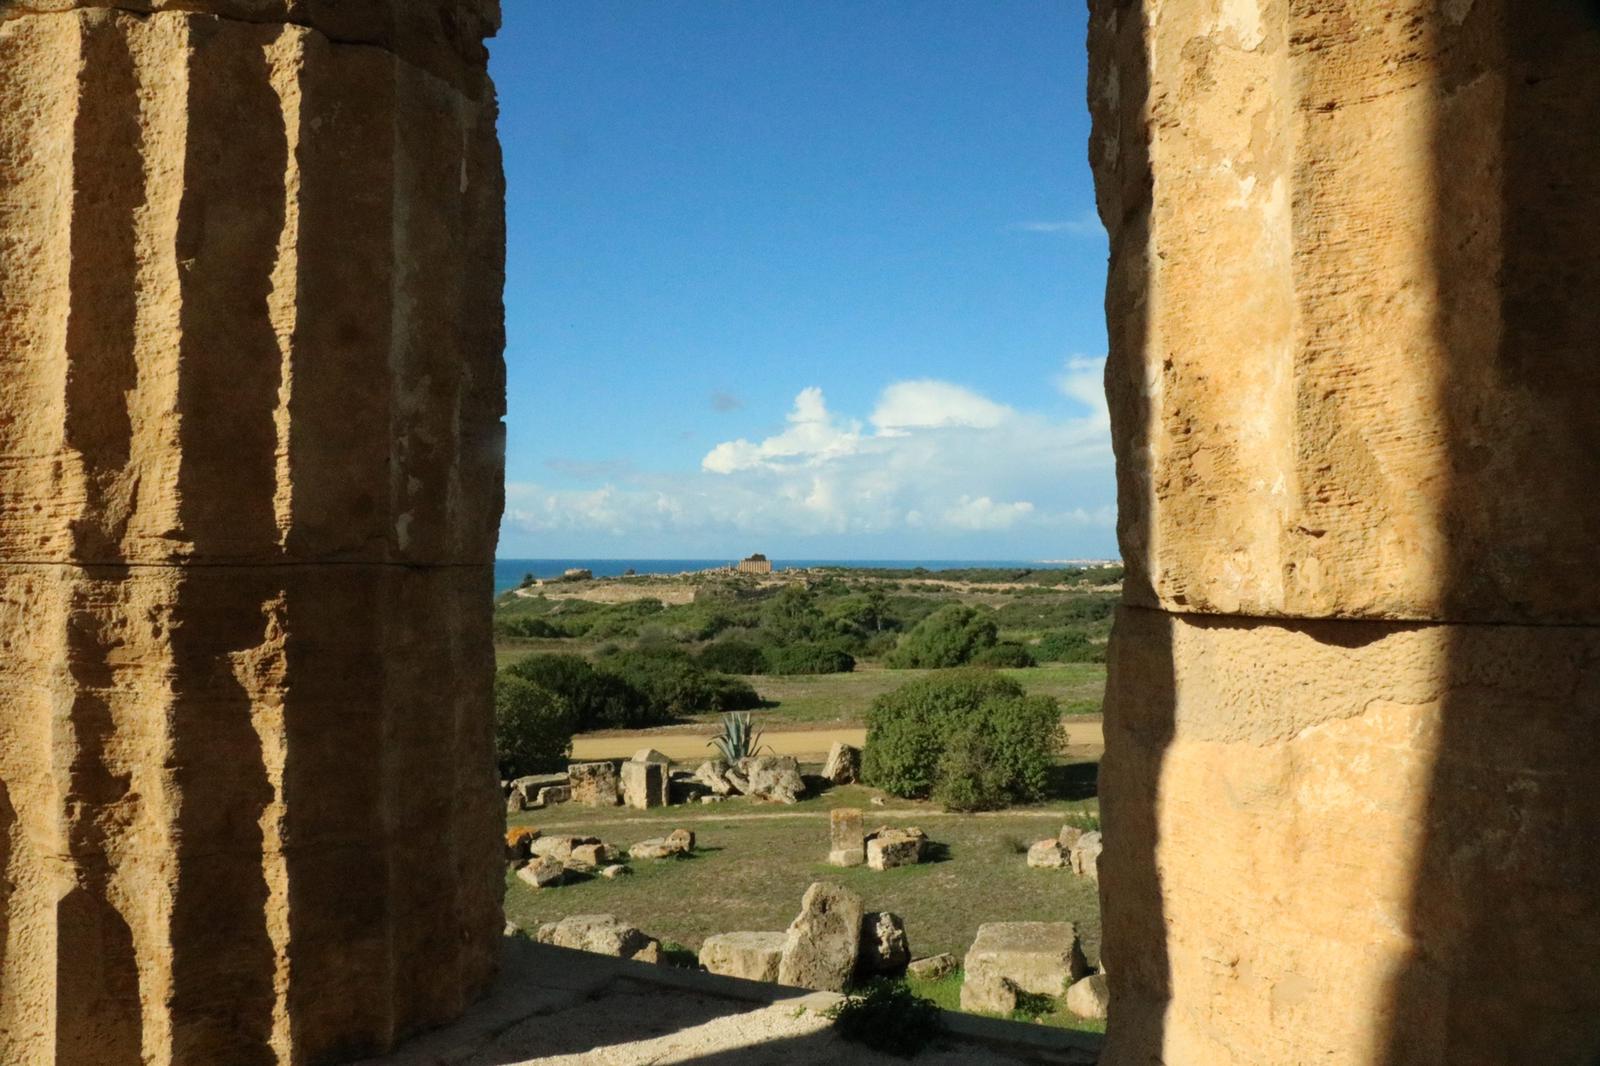 Parco archeologico di Selinunte: concerti di Natale e il 16 dicembre  echi dell’altra Sicilia alla ricerca dei suoni “liberi” di Selinunte